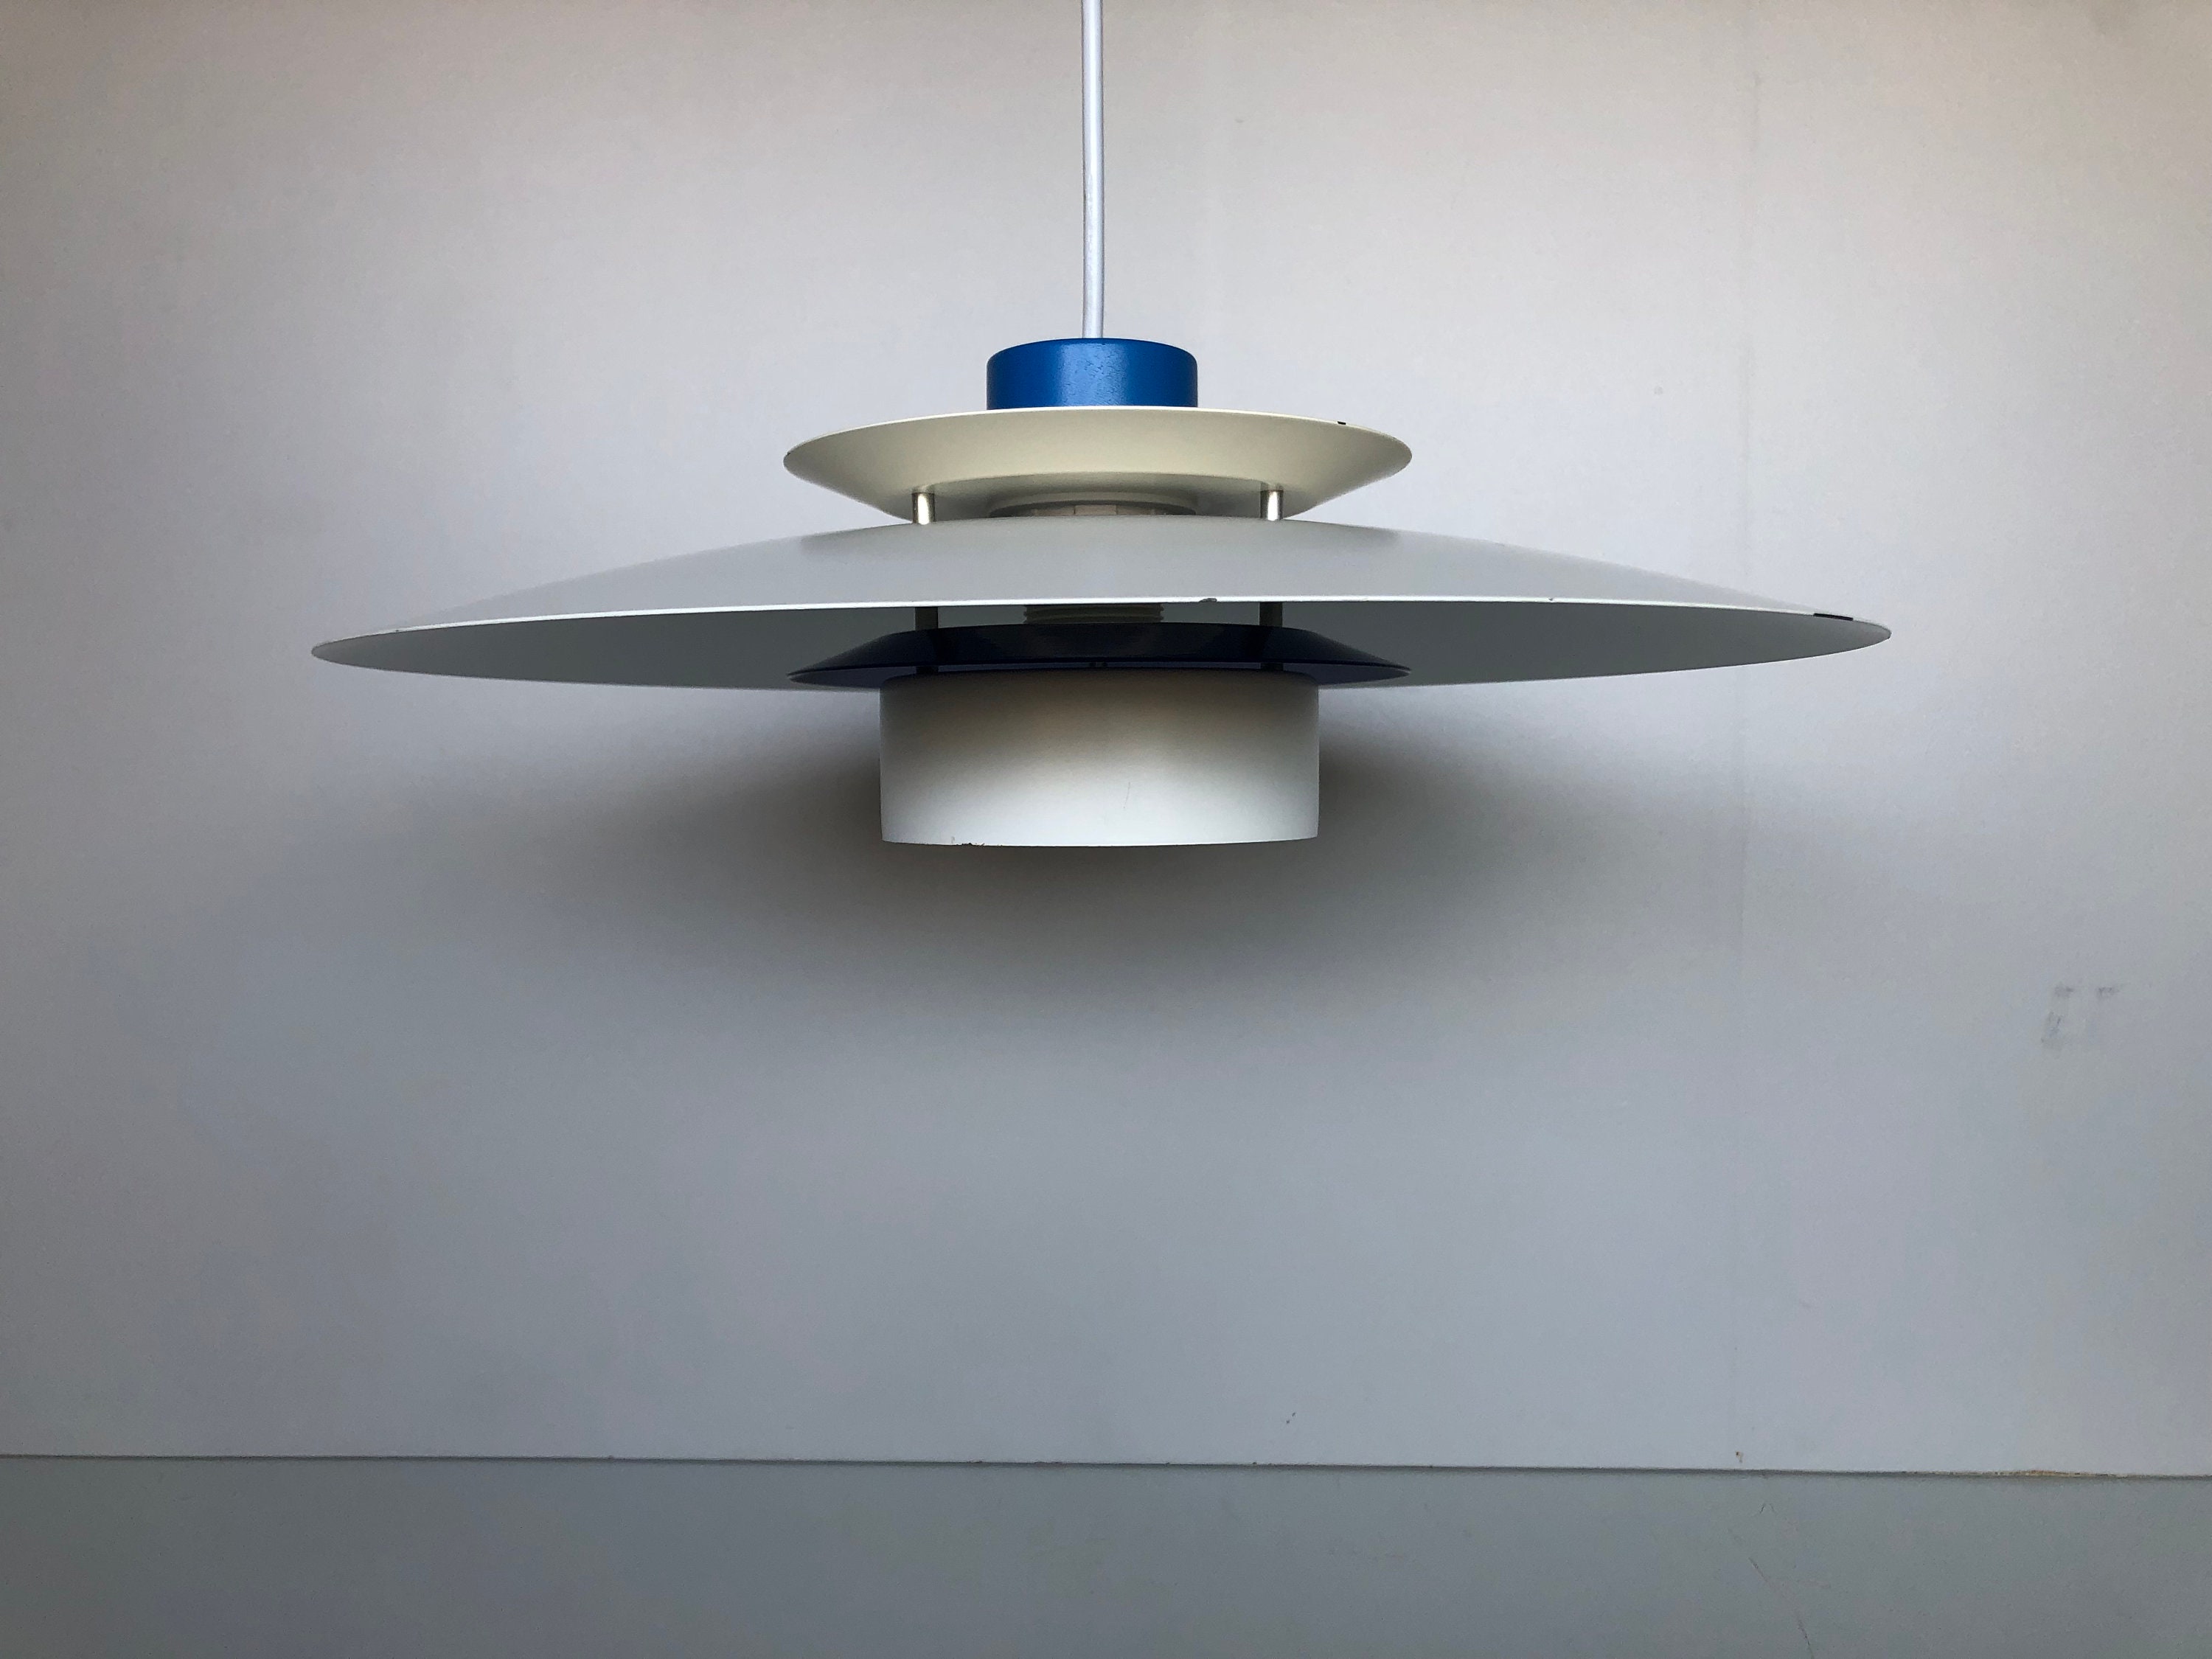 PH5 Pendant by Poul Hennigsen Scandinavian Design White – Danke Galerie